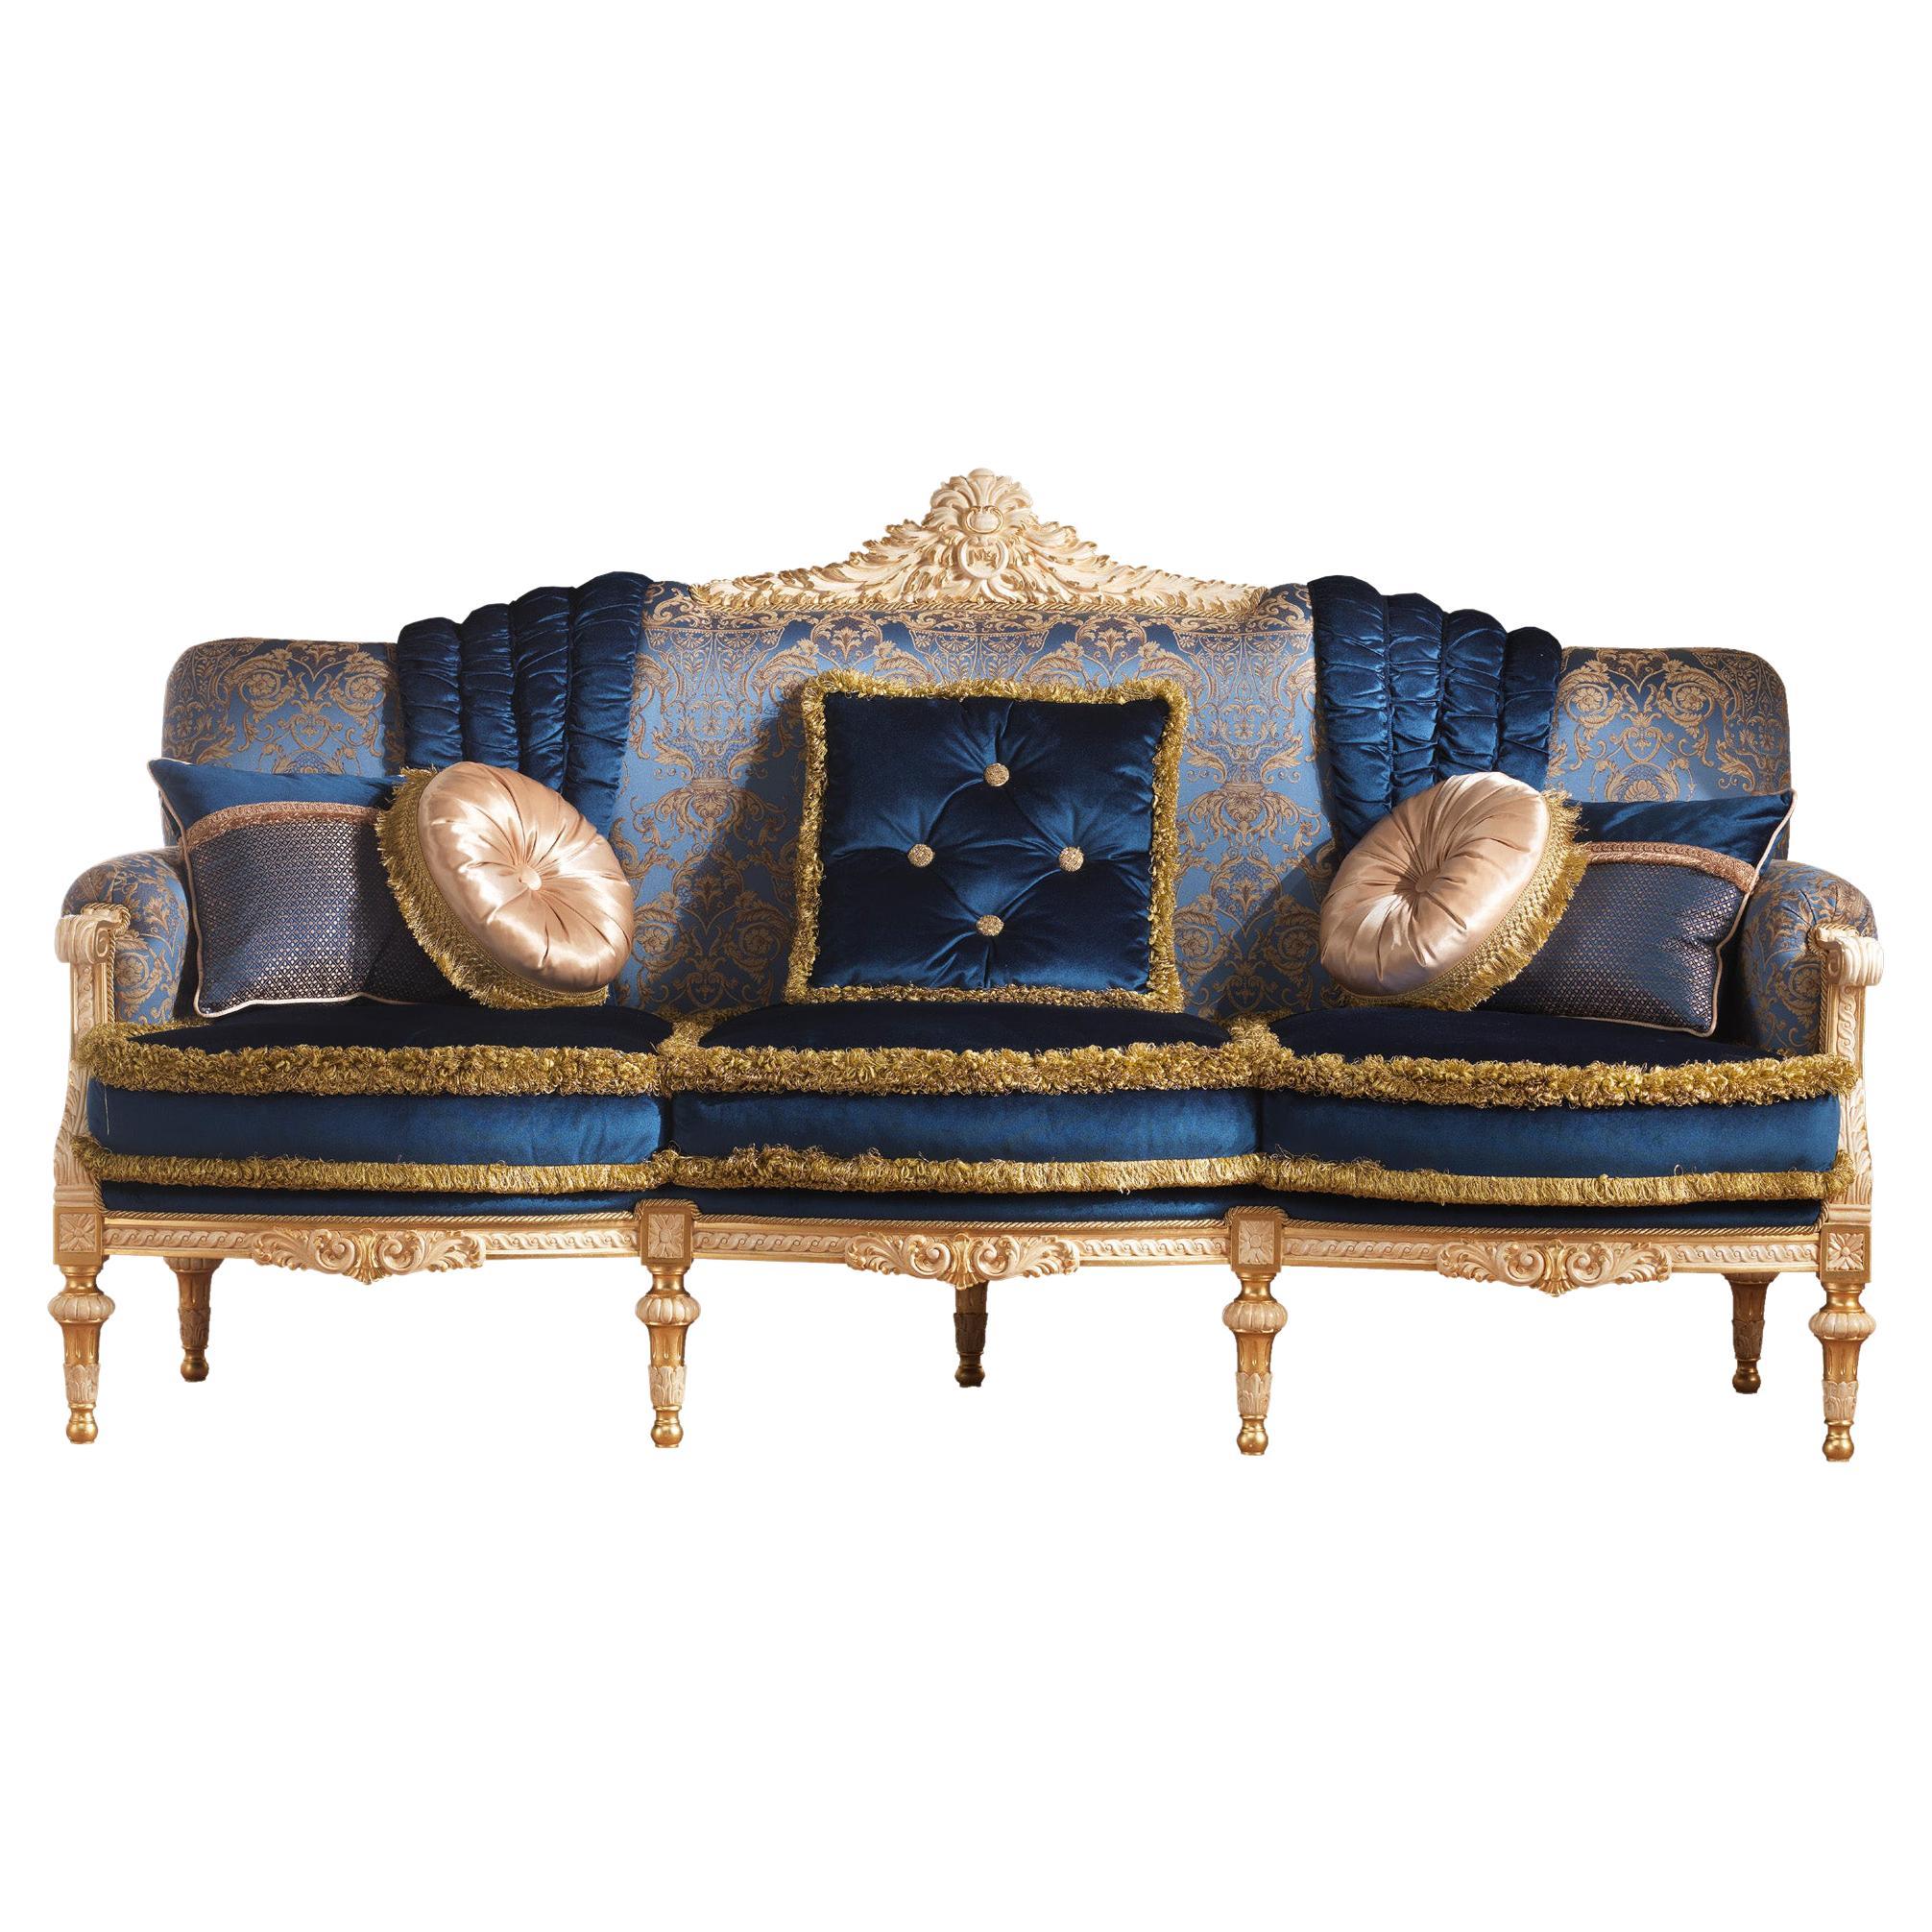 Canapé vénitien noble en bois massif et laqué ivoire avec détails en feuilles d'or